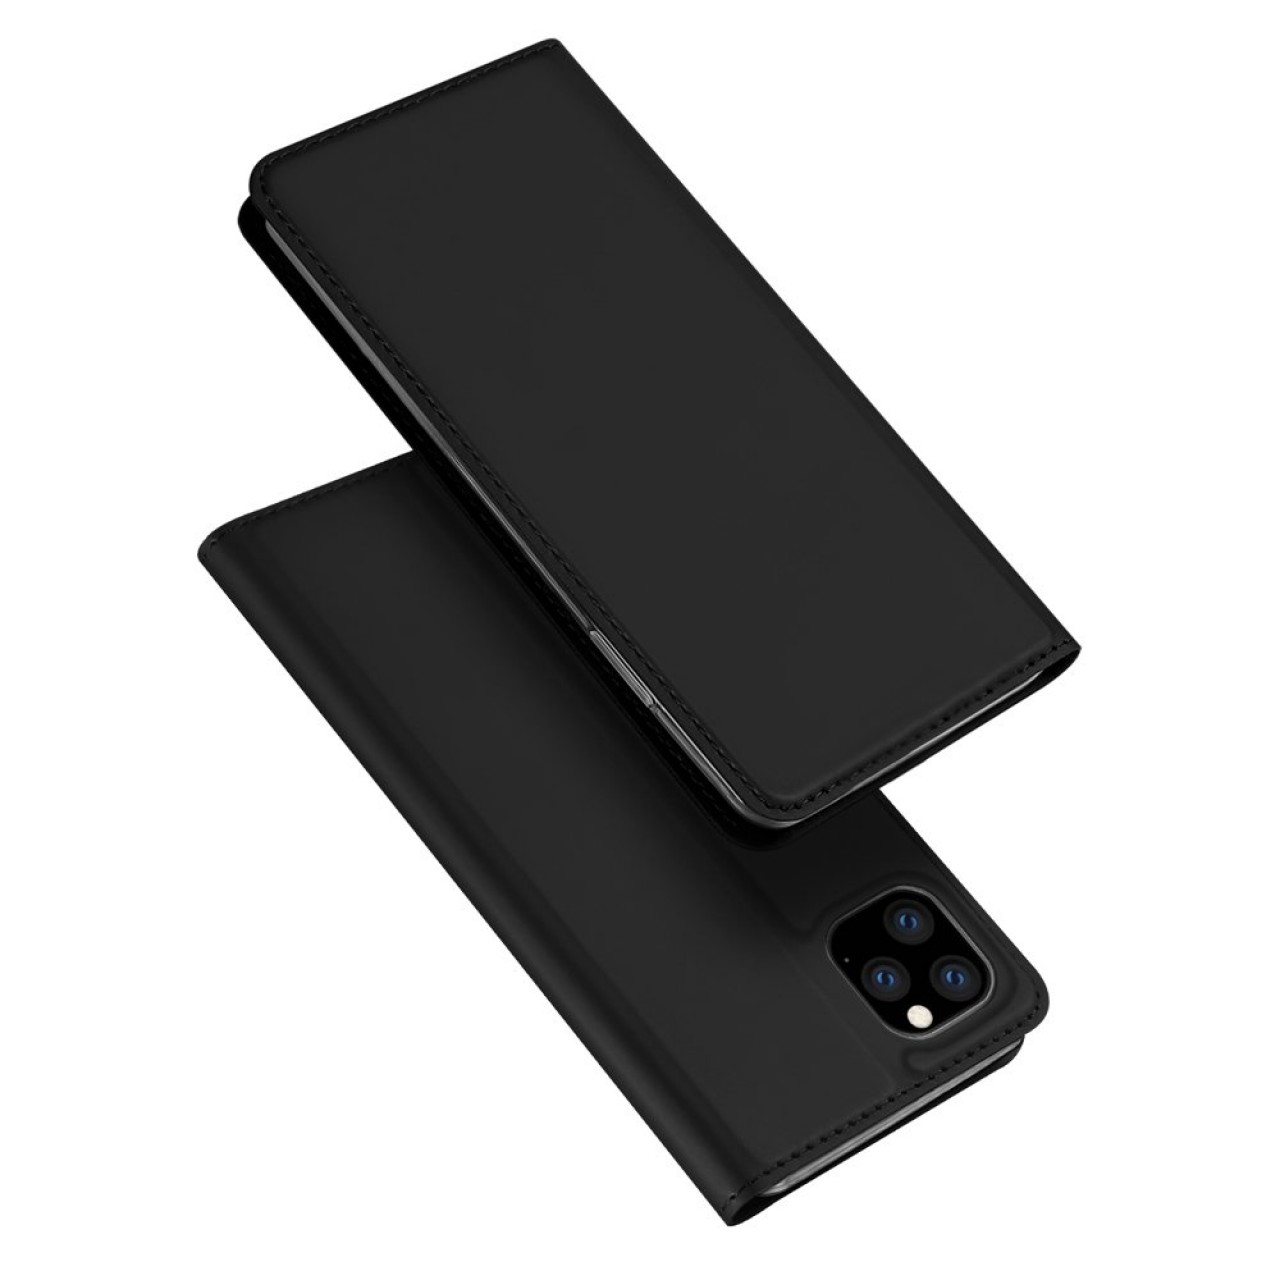 Θήκη iPhone 11 Pro Max DUX DUCIS πορτοφόλι - 4879 - Μαύρο - OEM